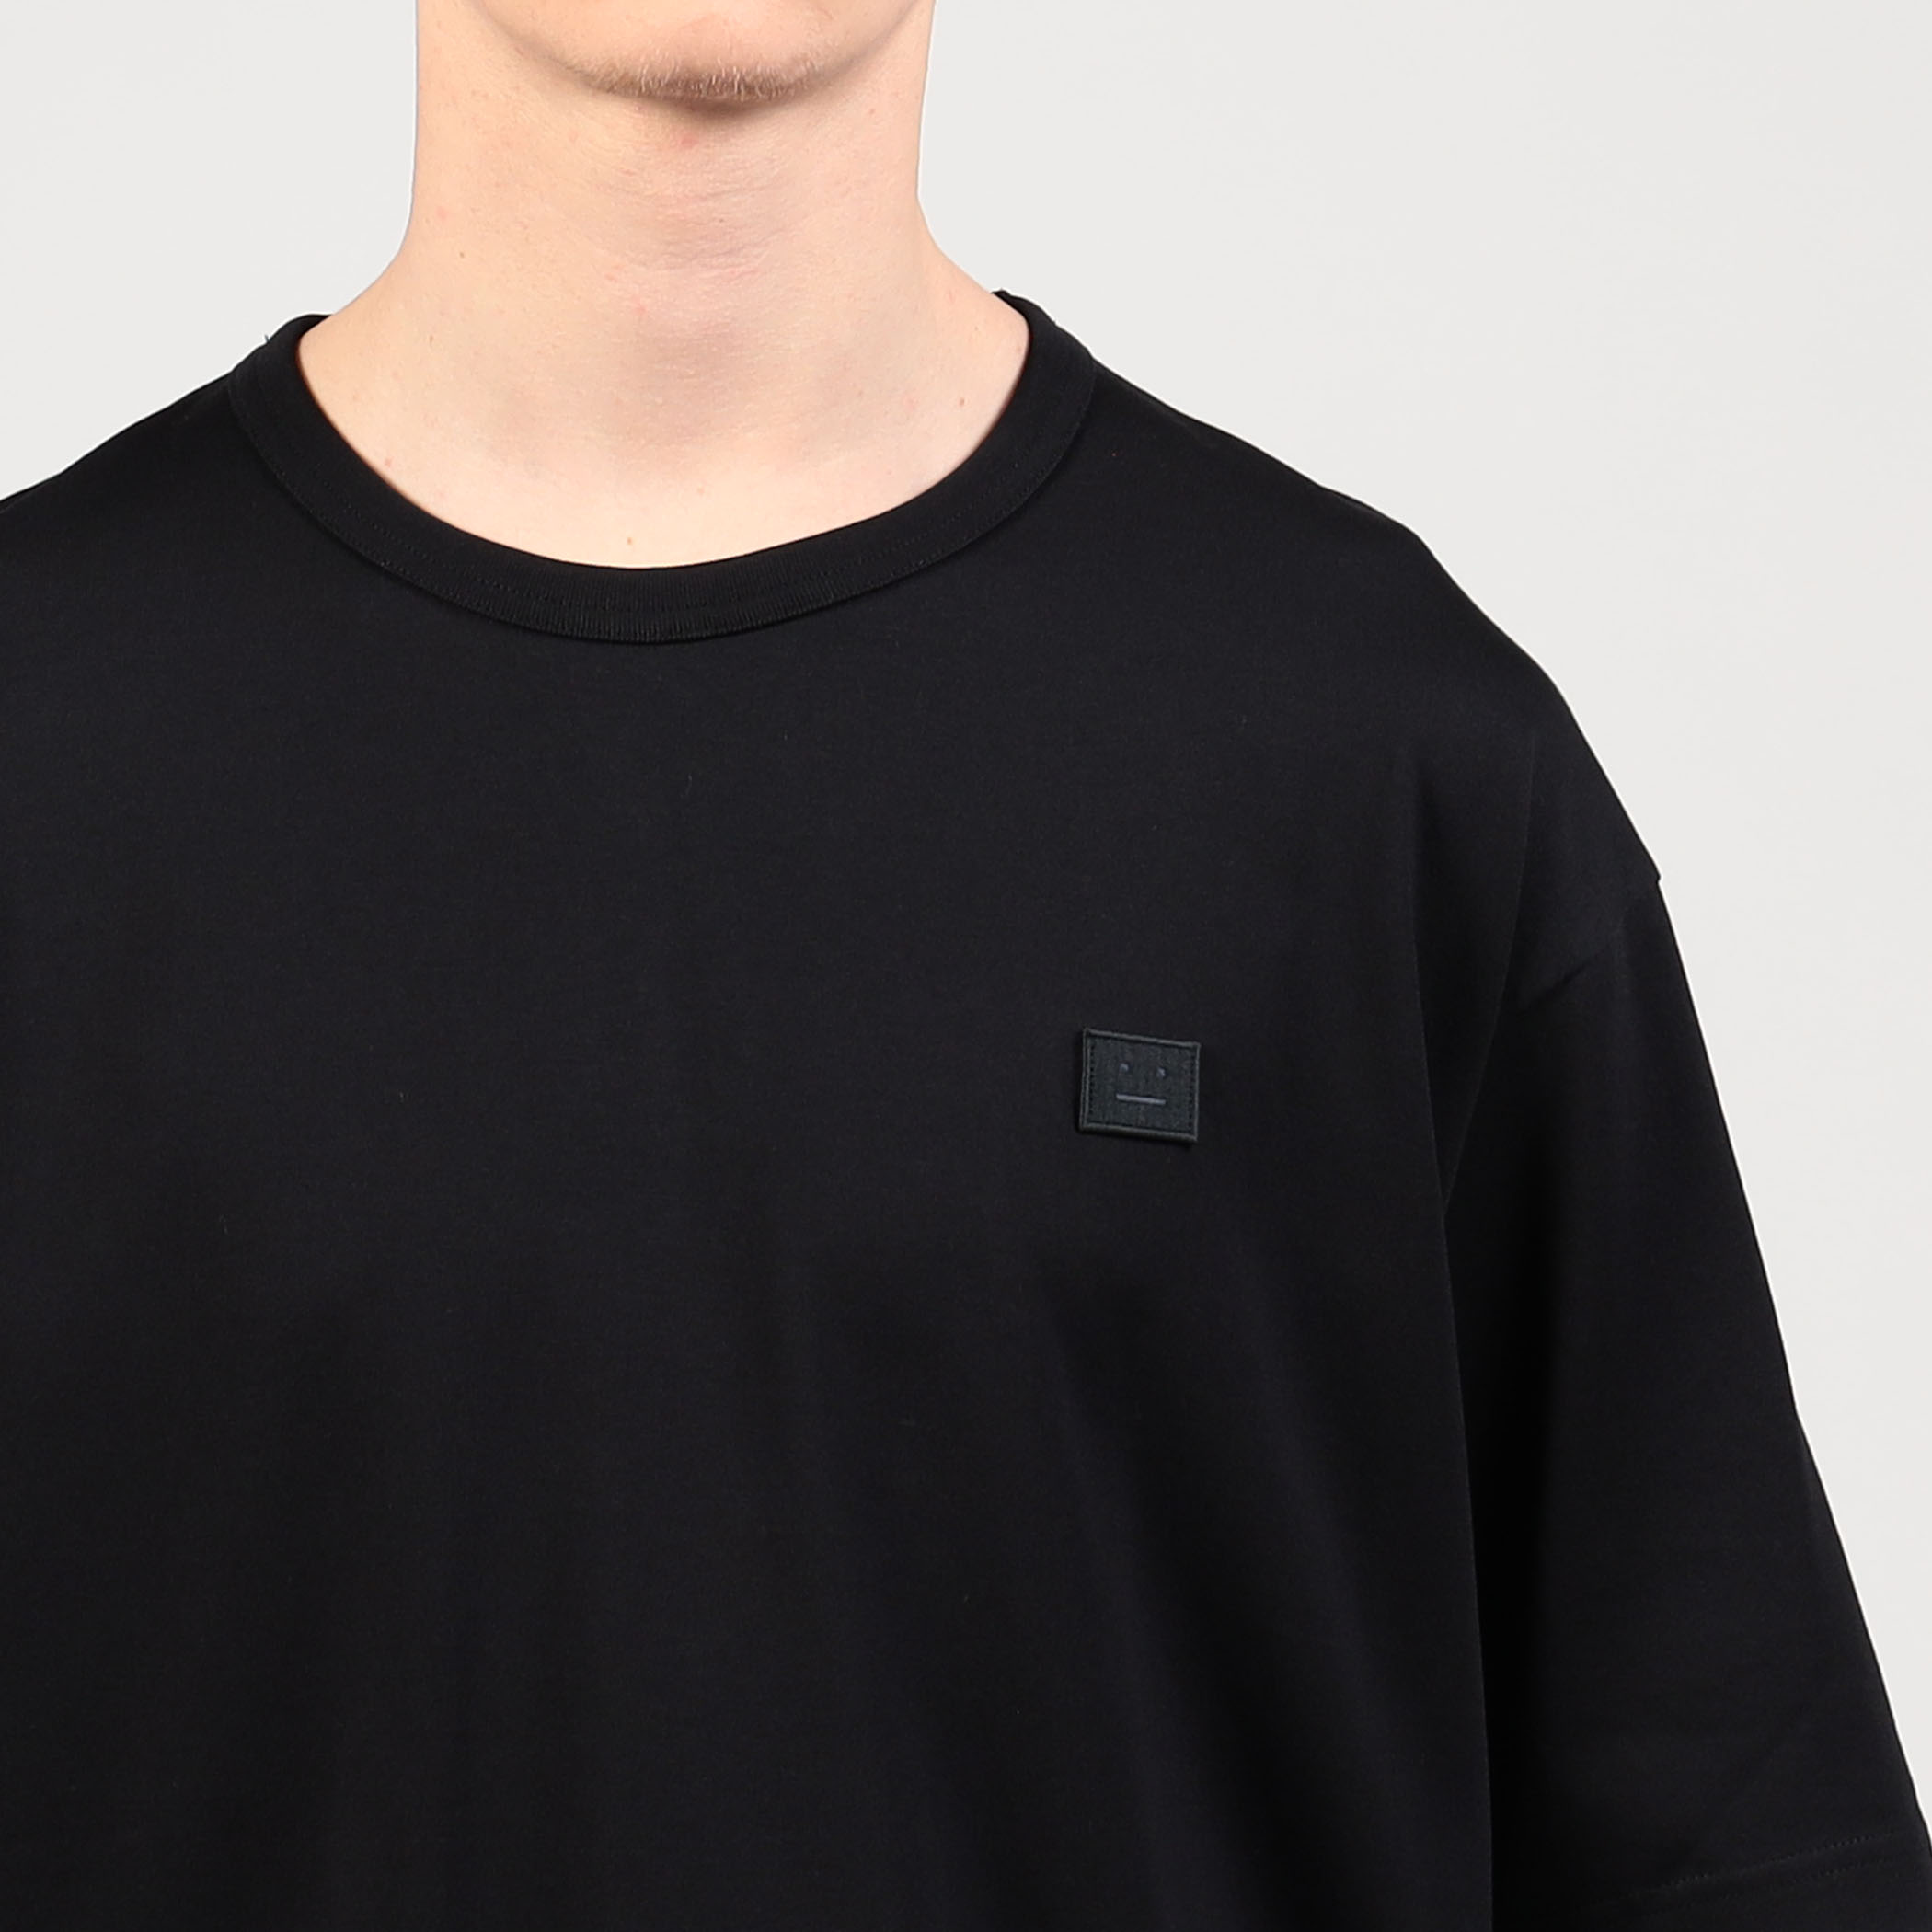 Acne Studios Tシャツ face 黒